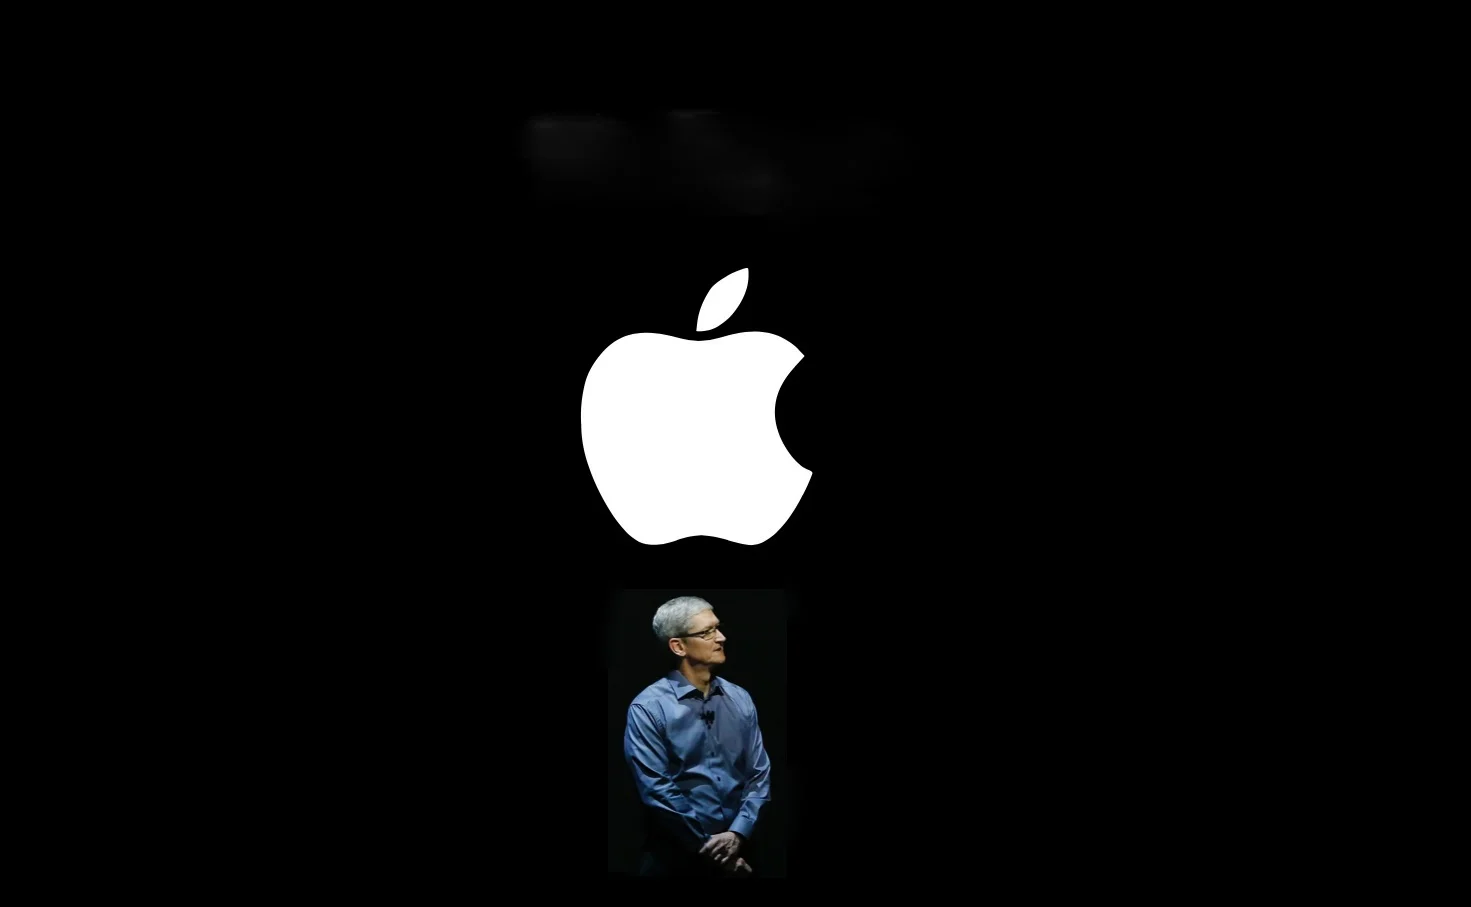 10 сентября компания Apple проведет презентацию, на которой представит iPhone 11 и другие новинки. В честь этого события мы решили проверить знания читателей по истории компании. Испытайте себя, даже если не любите «яблочные гаджеты». А вдруг вы знаете о гаджетах больше ваших друзей, кто пользуется техникой Apple?